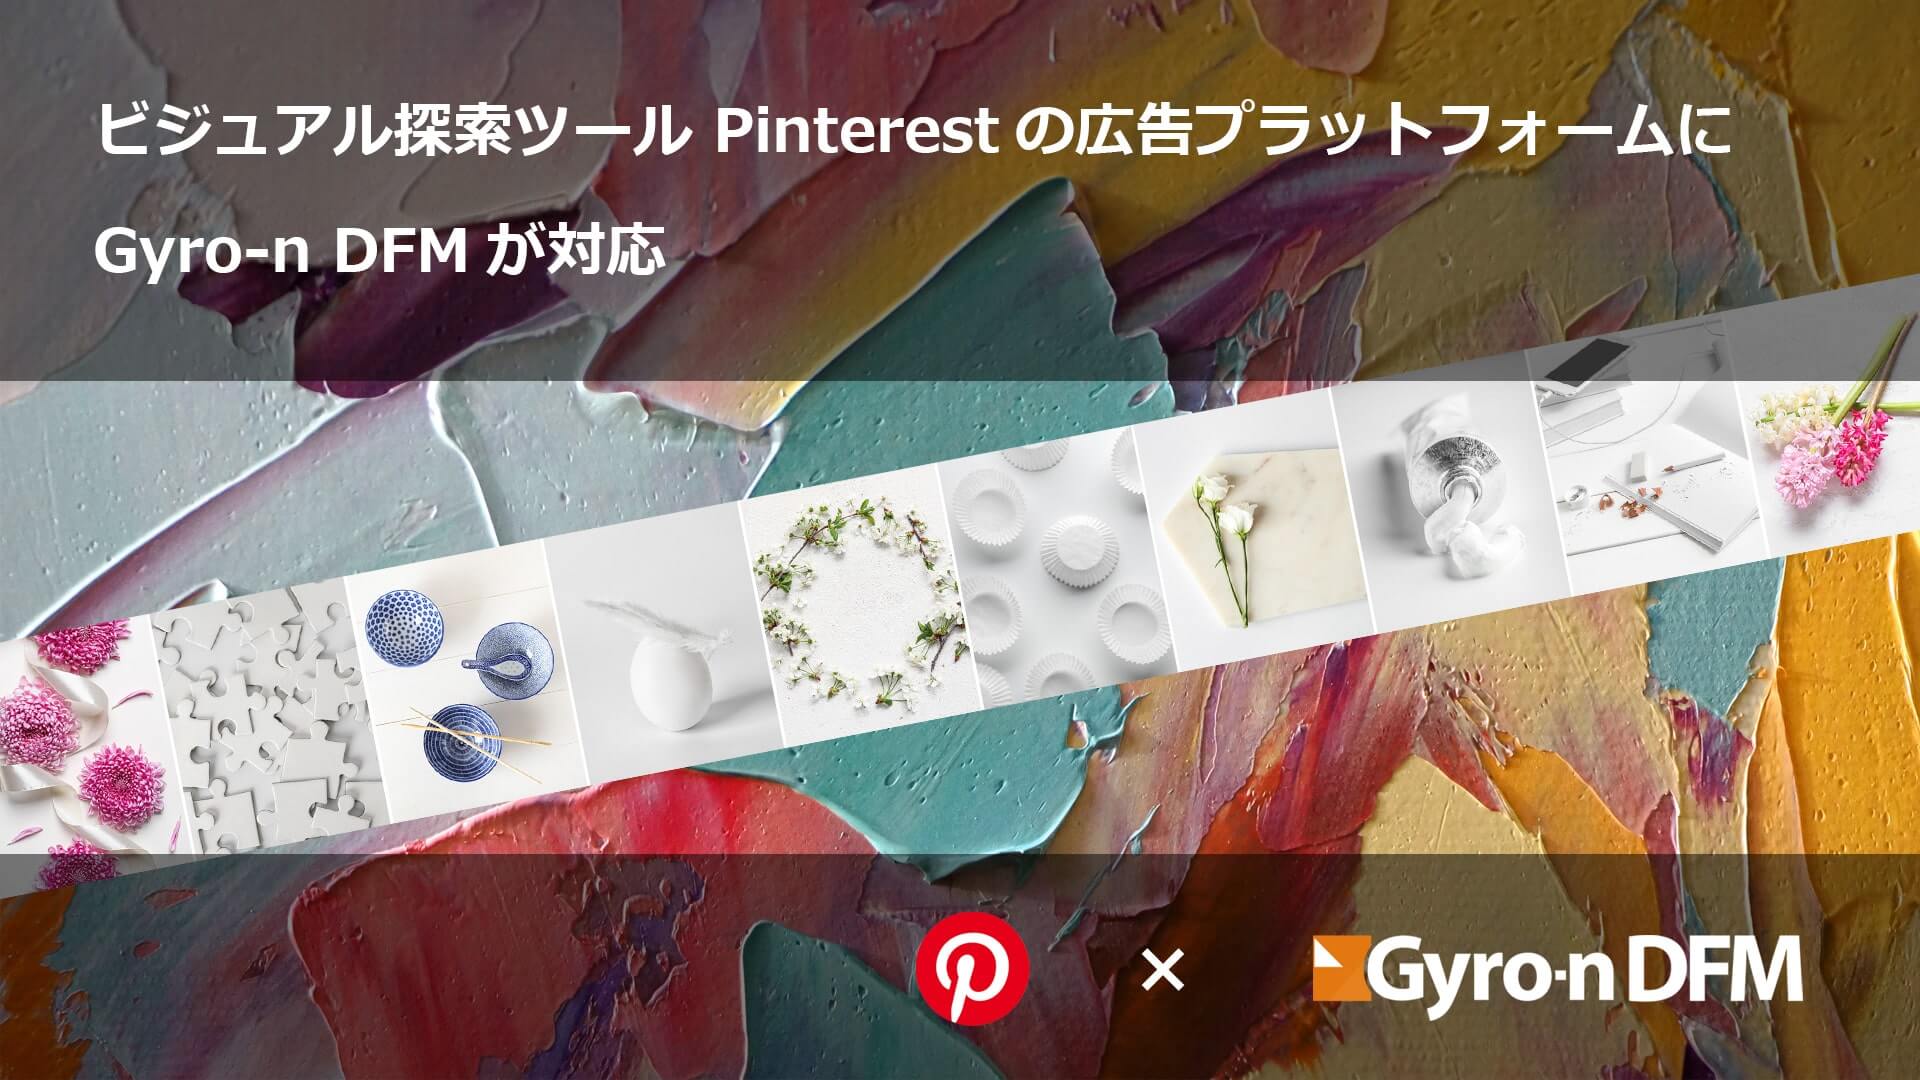 Pinterestアドのスムーズな導入・連携をお手伝い致します